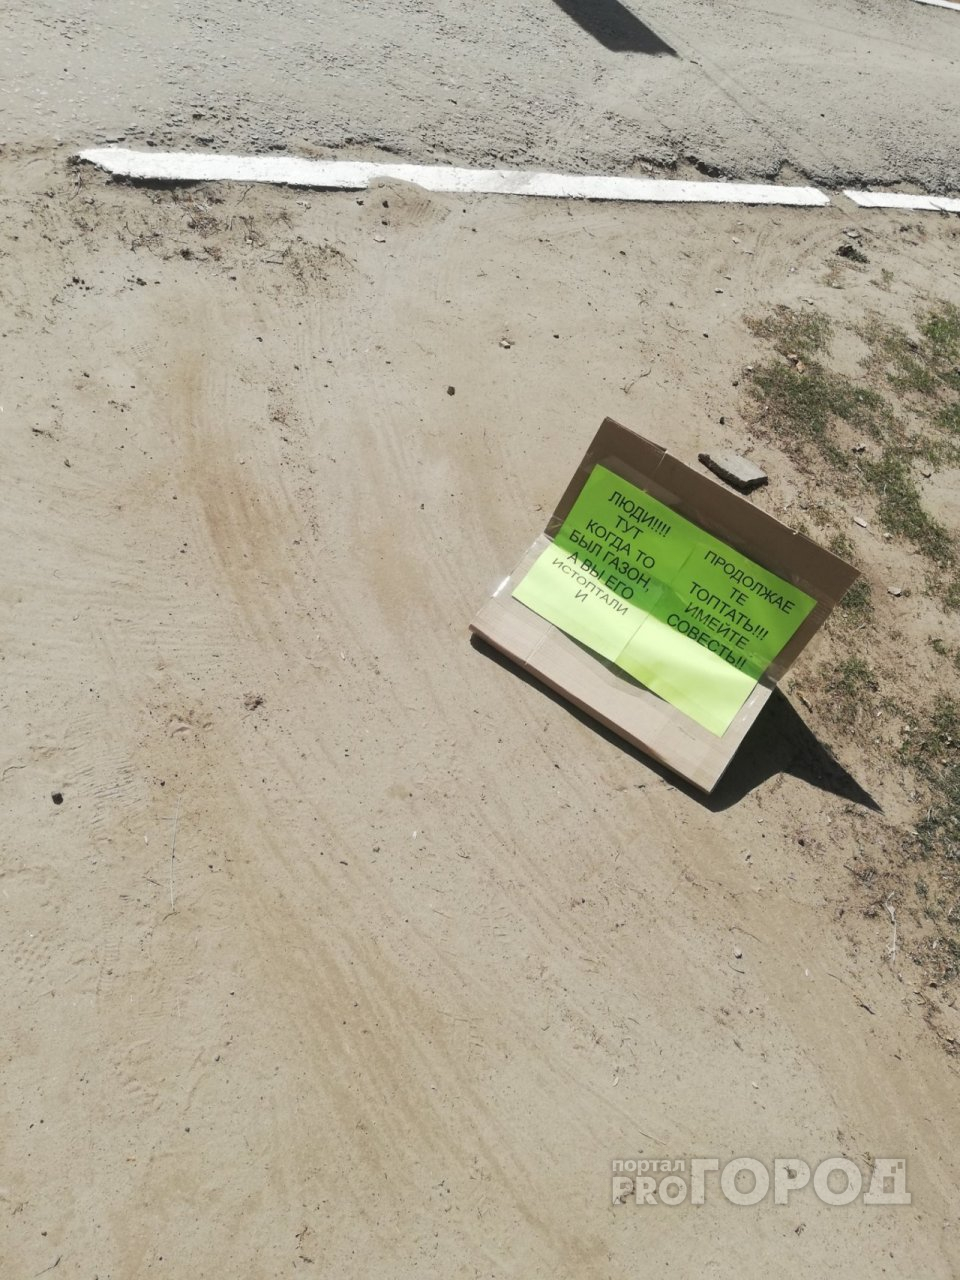 Фото дня: йошкаролинец оставил на дороге необычное послание